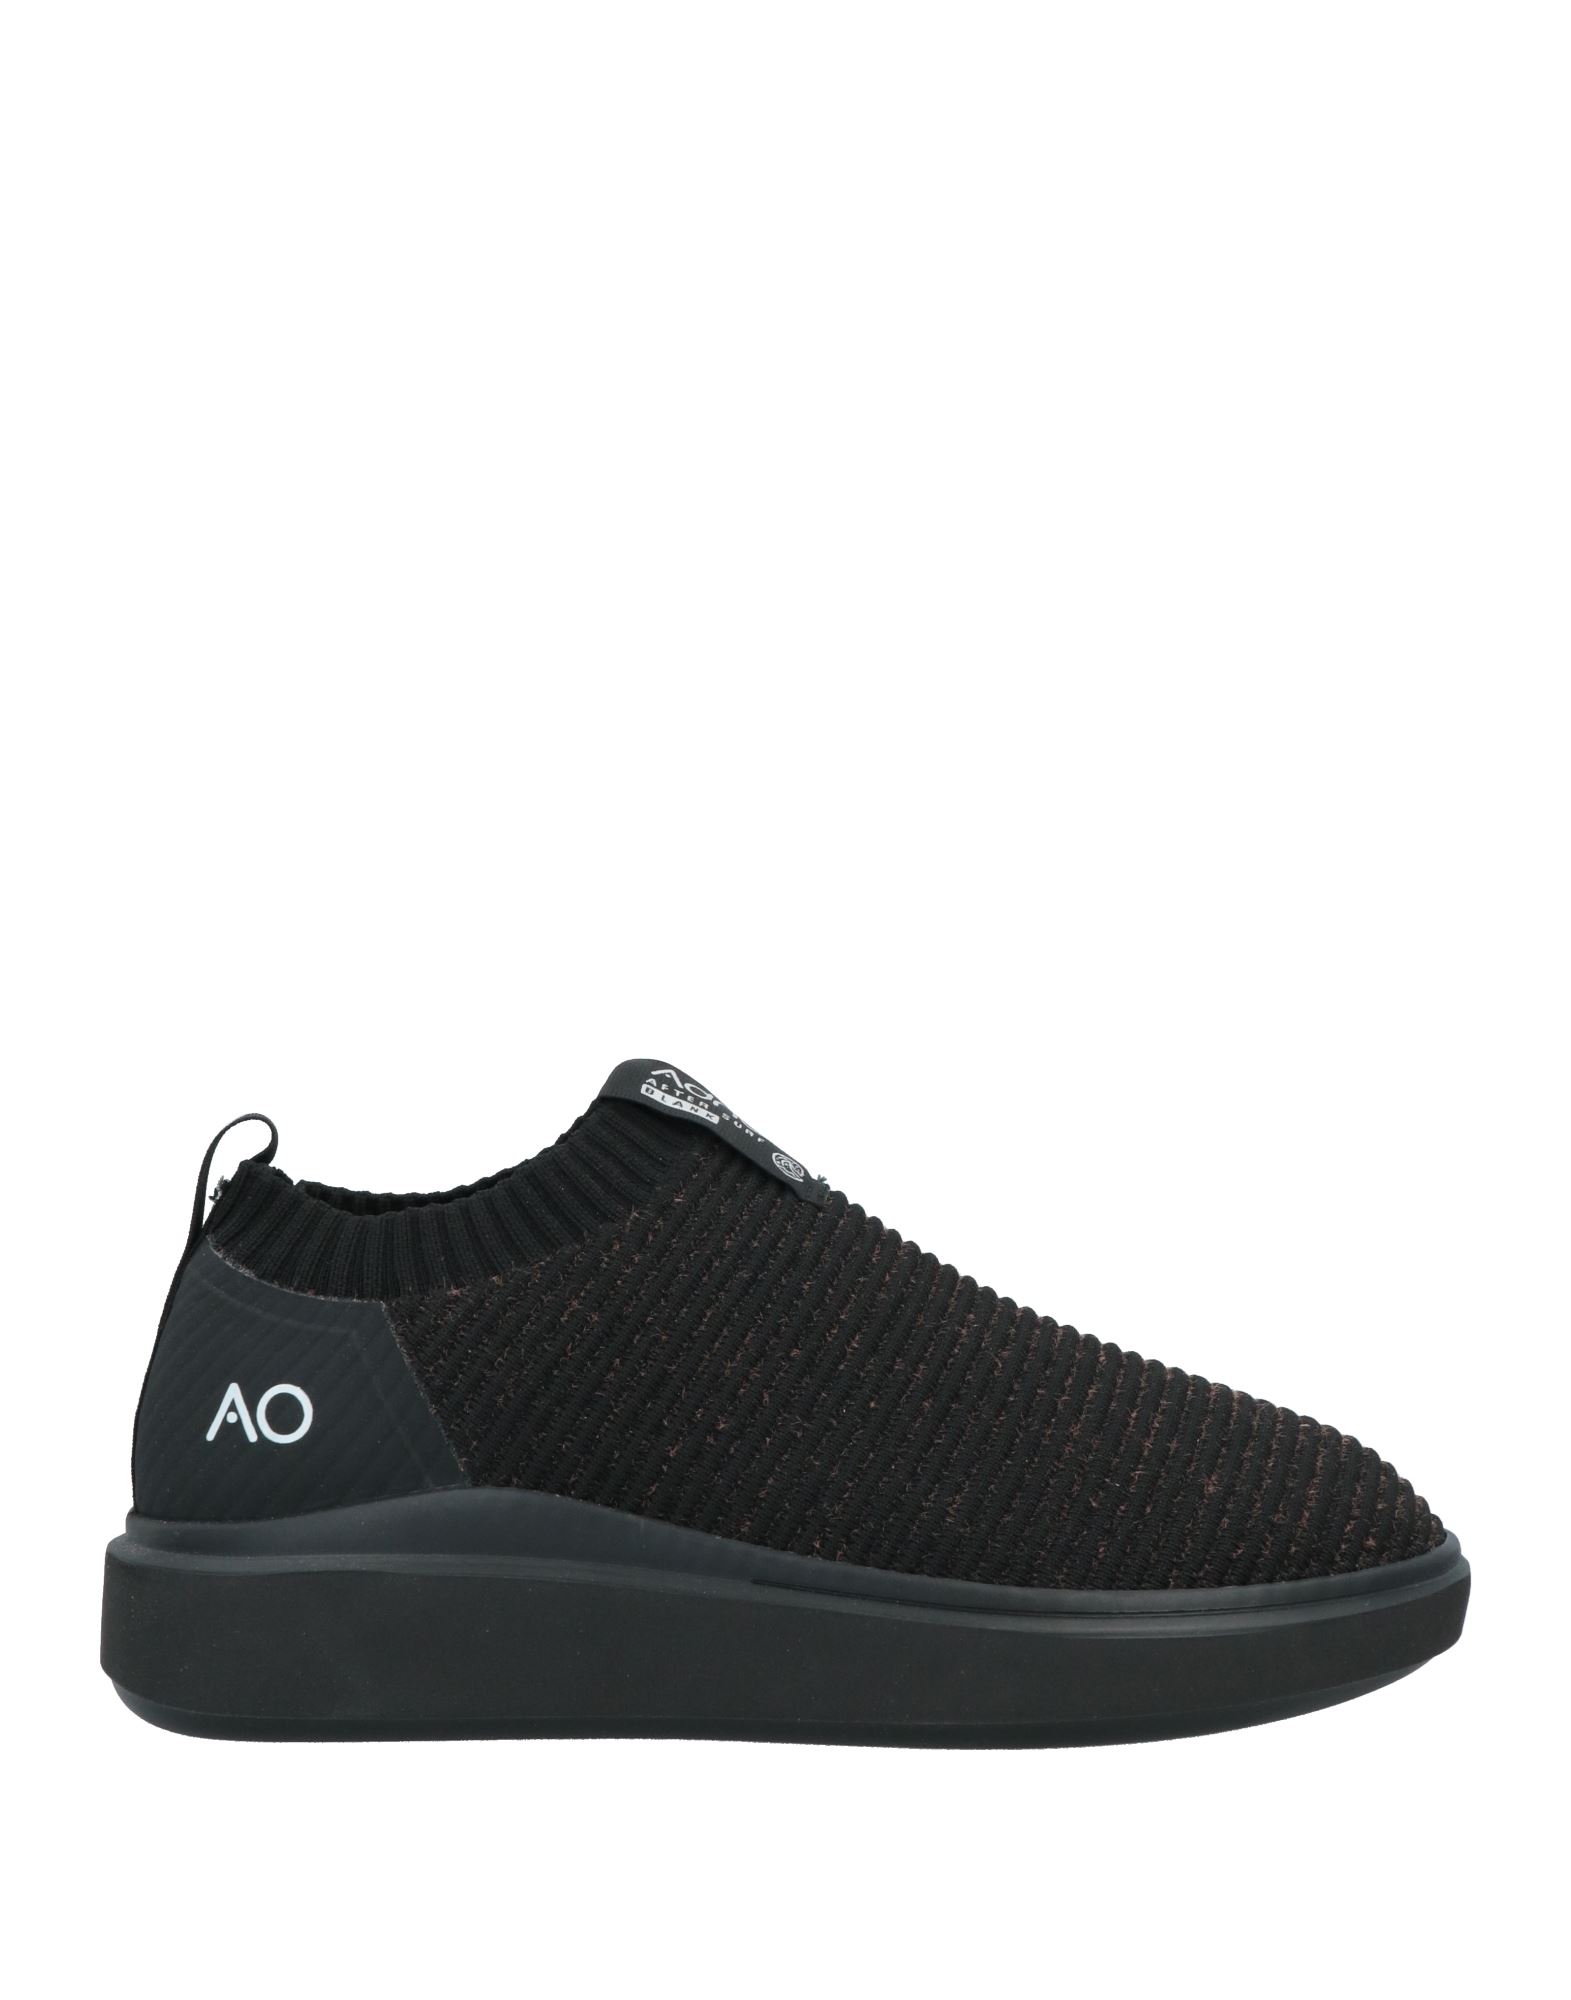 Adno Sneakers In Black